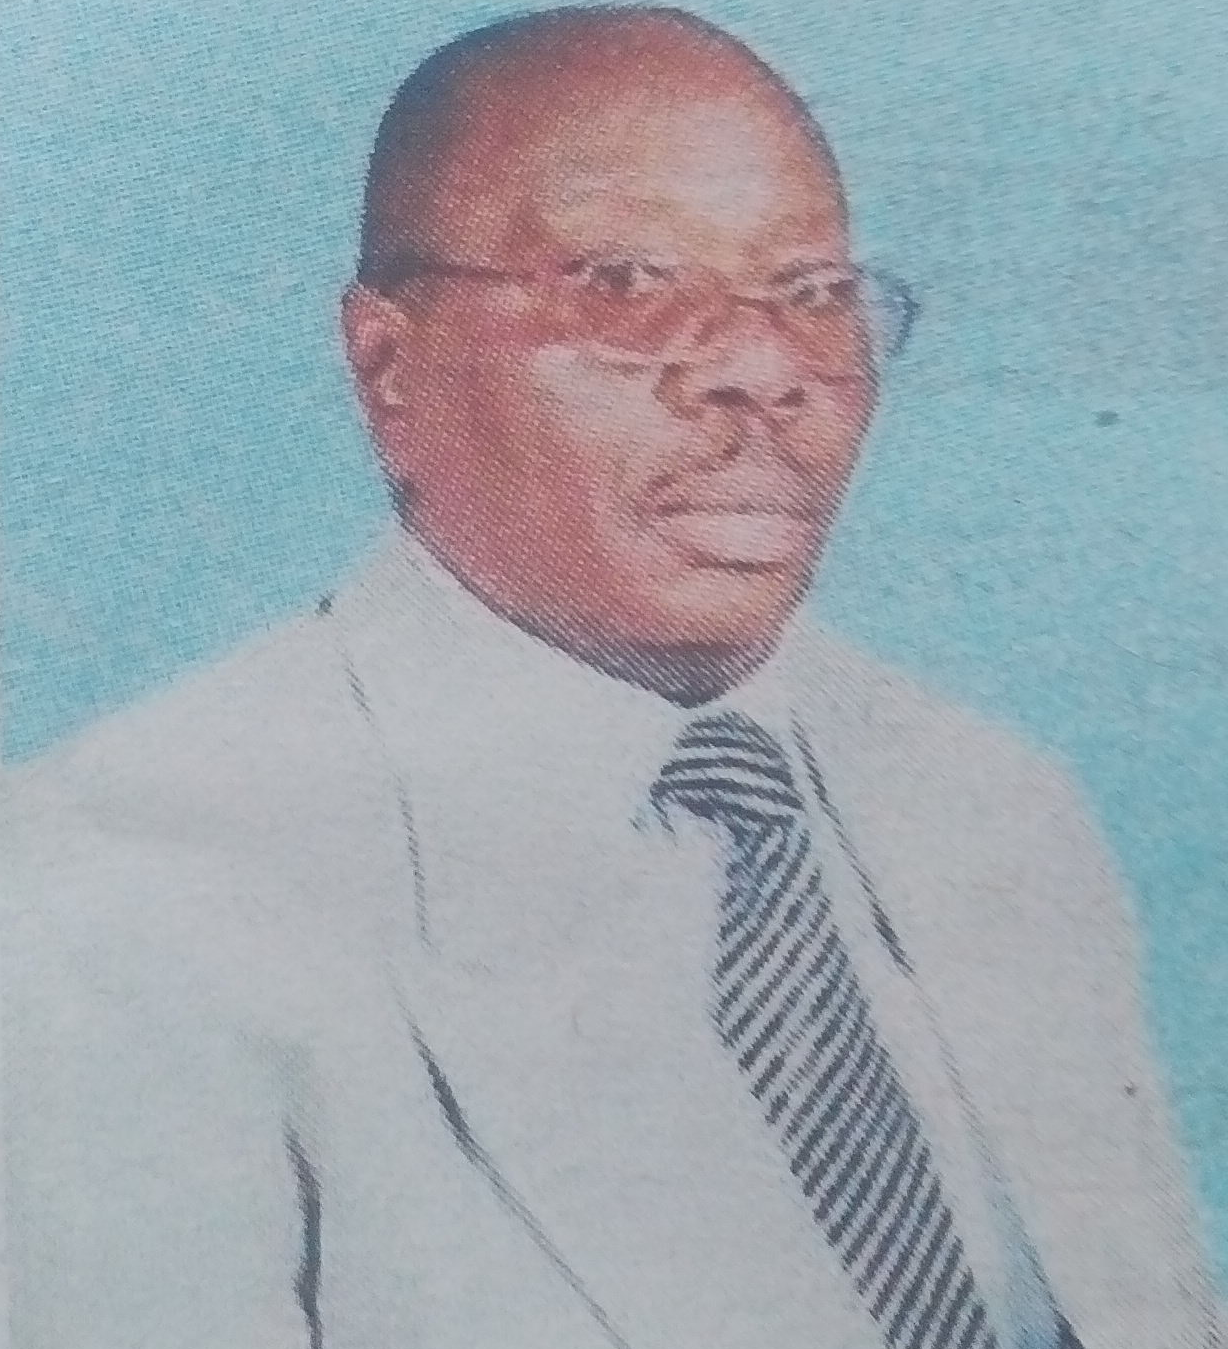 Obituary Image of Edward Muriuki Kamathi (Gachagua)